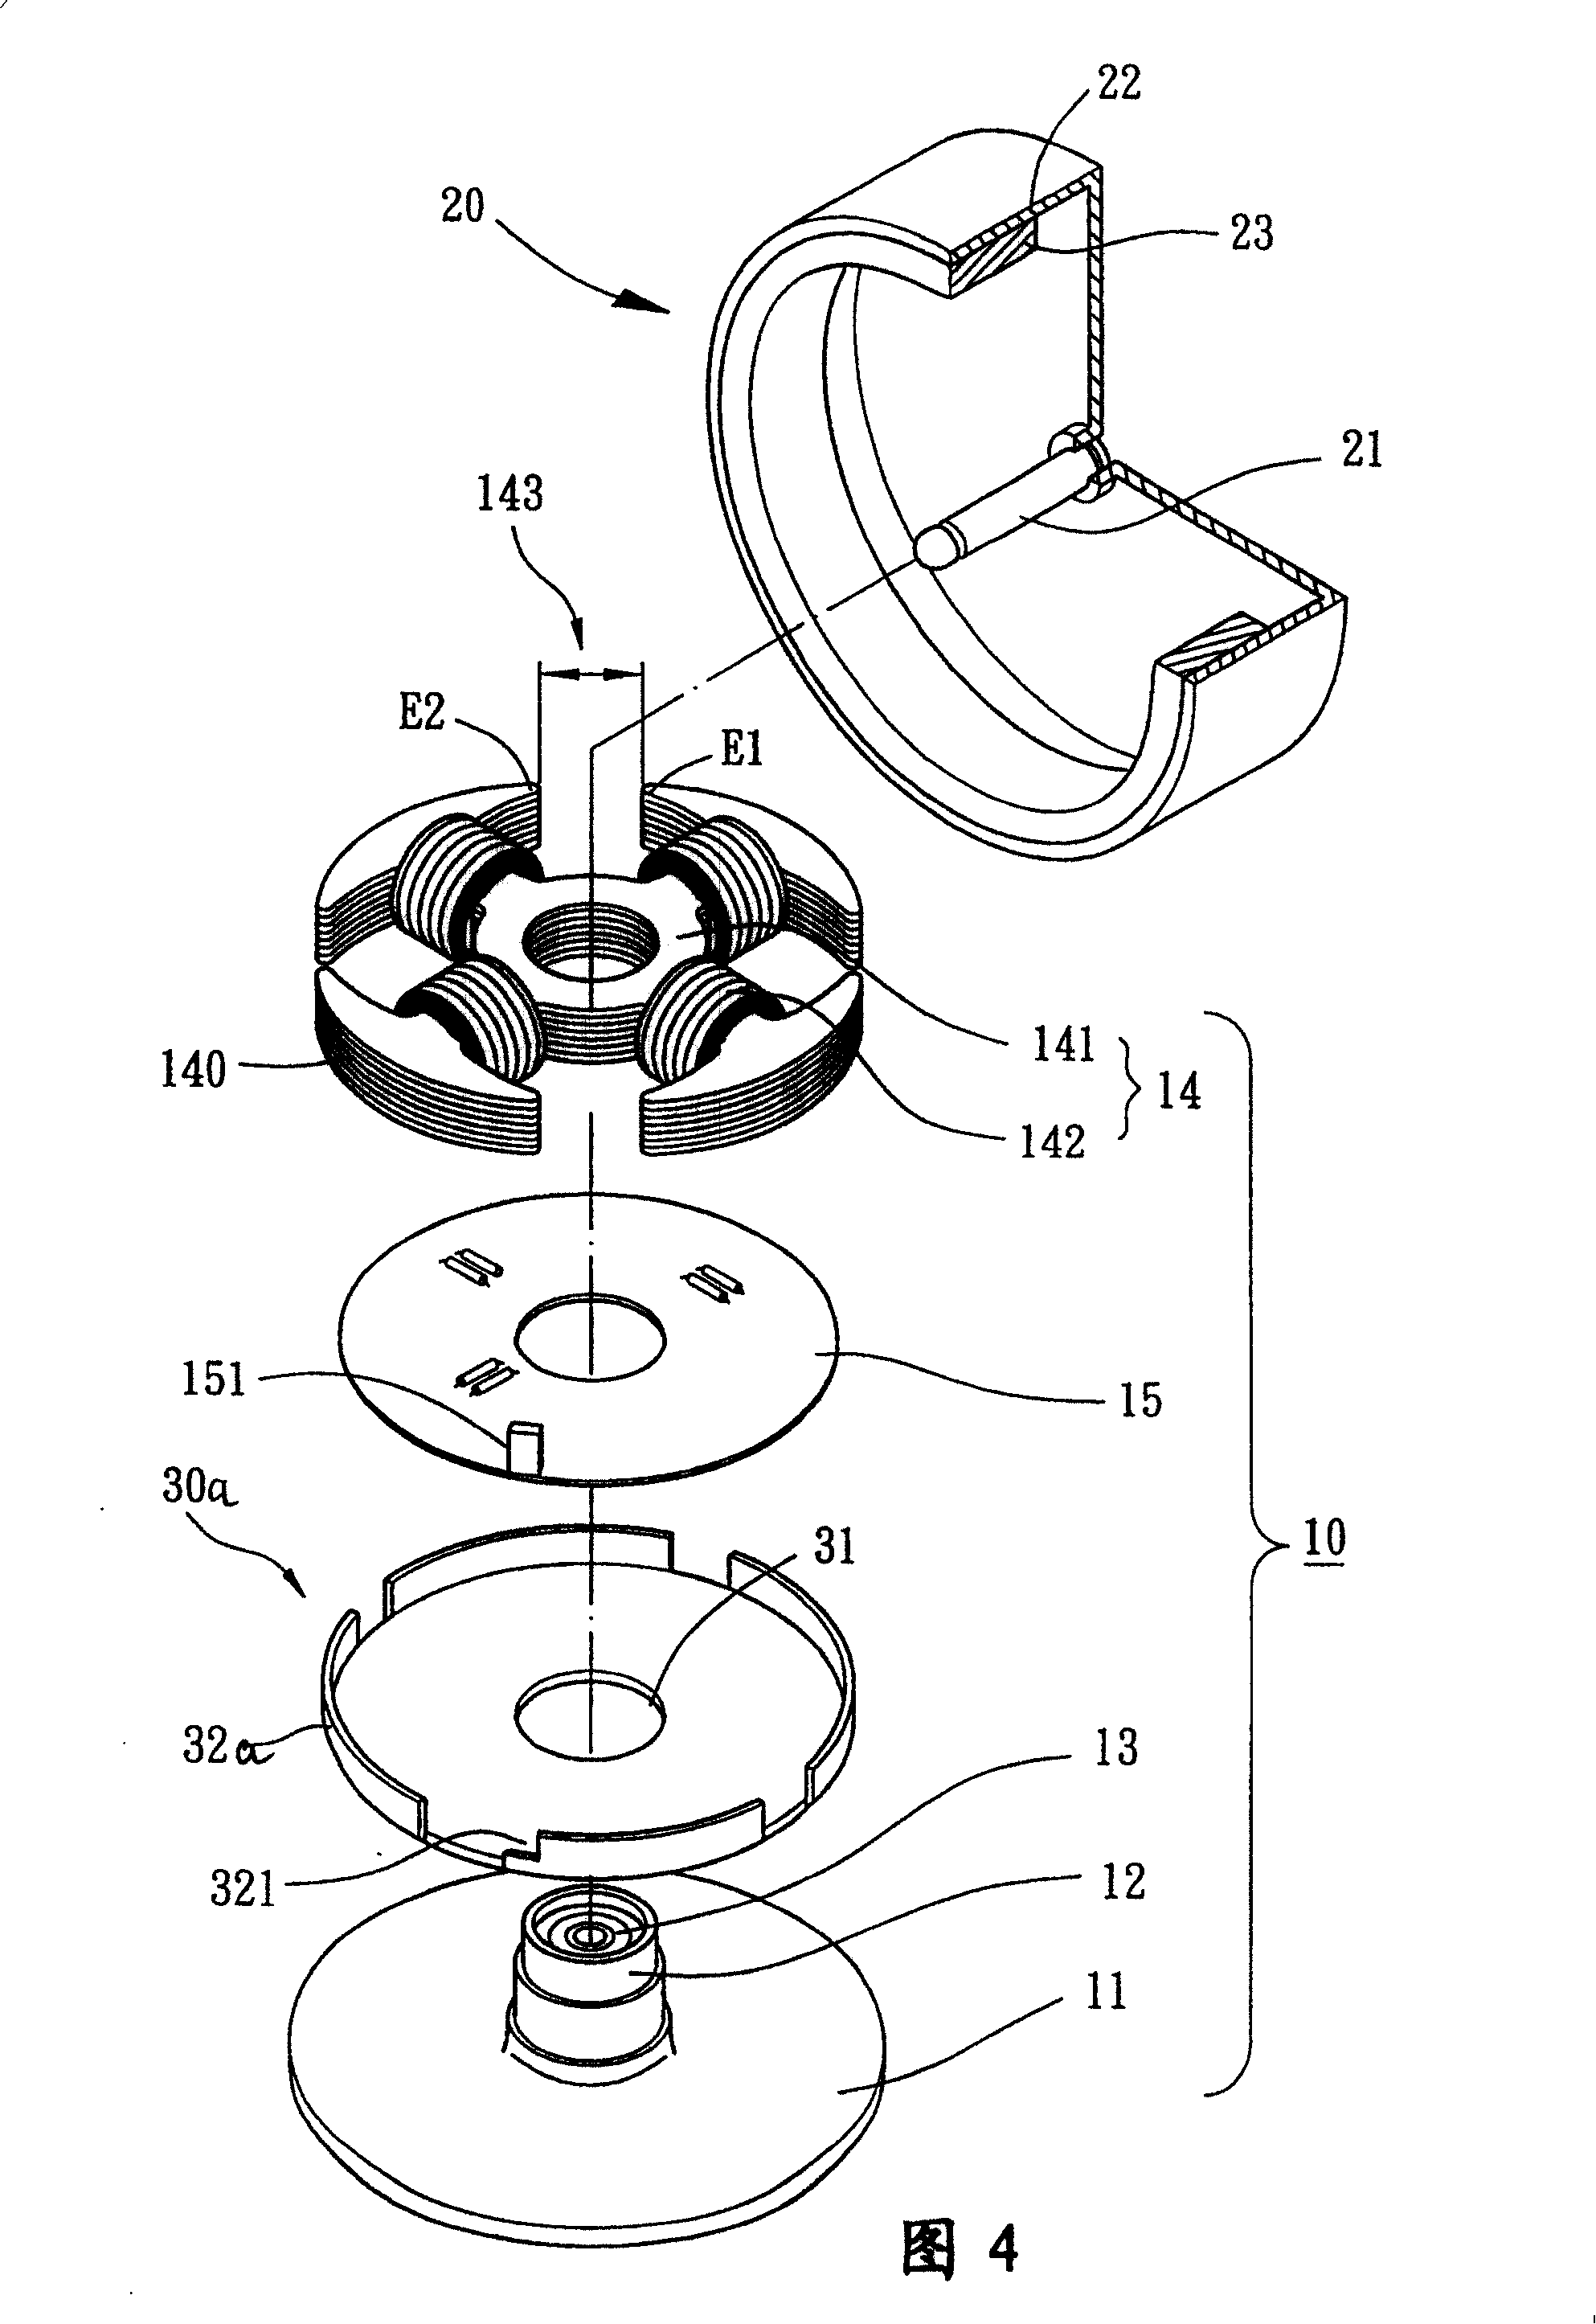 Motor with magnetic-sensing balance sheet